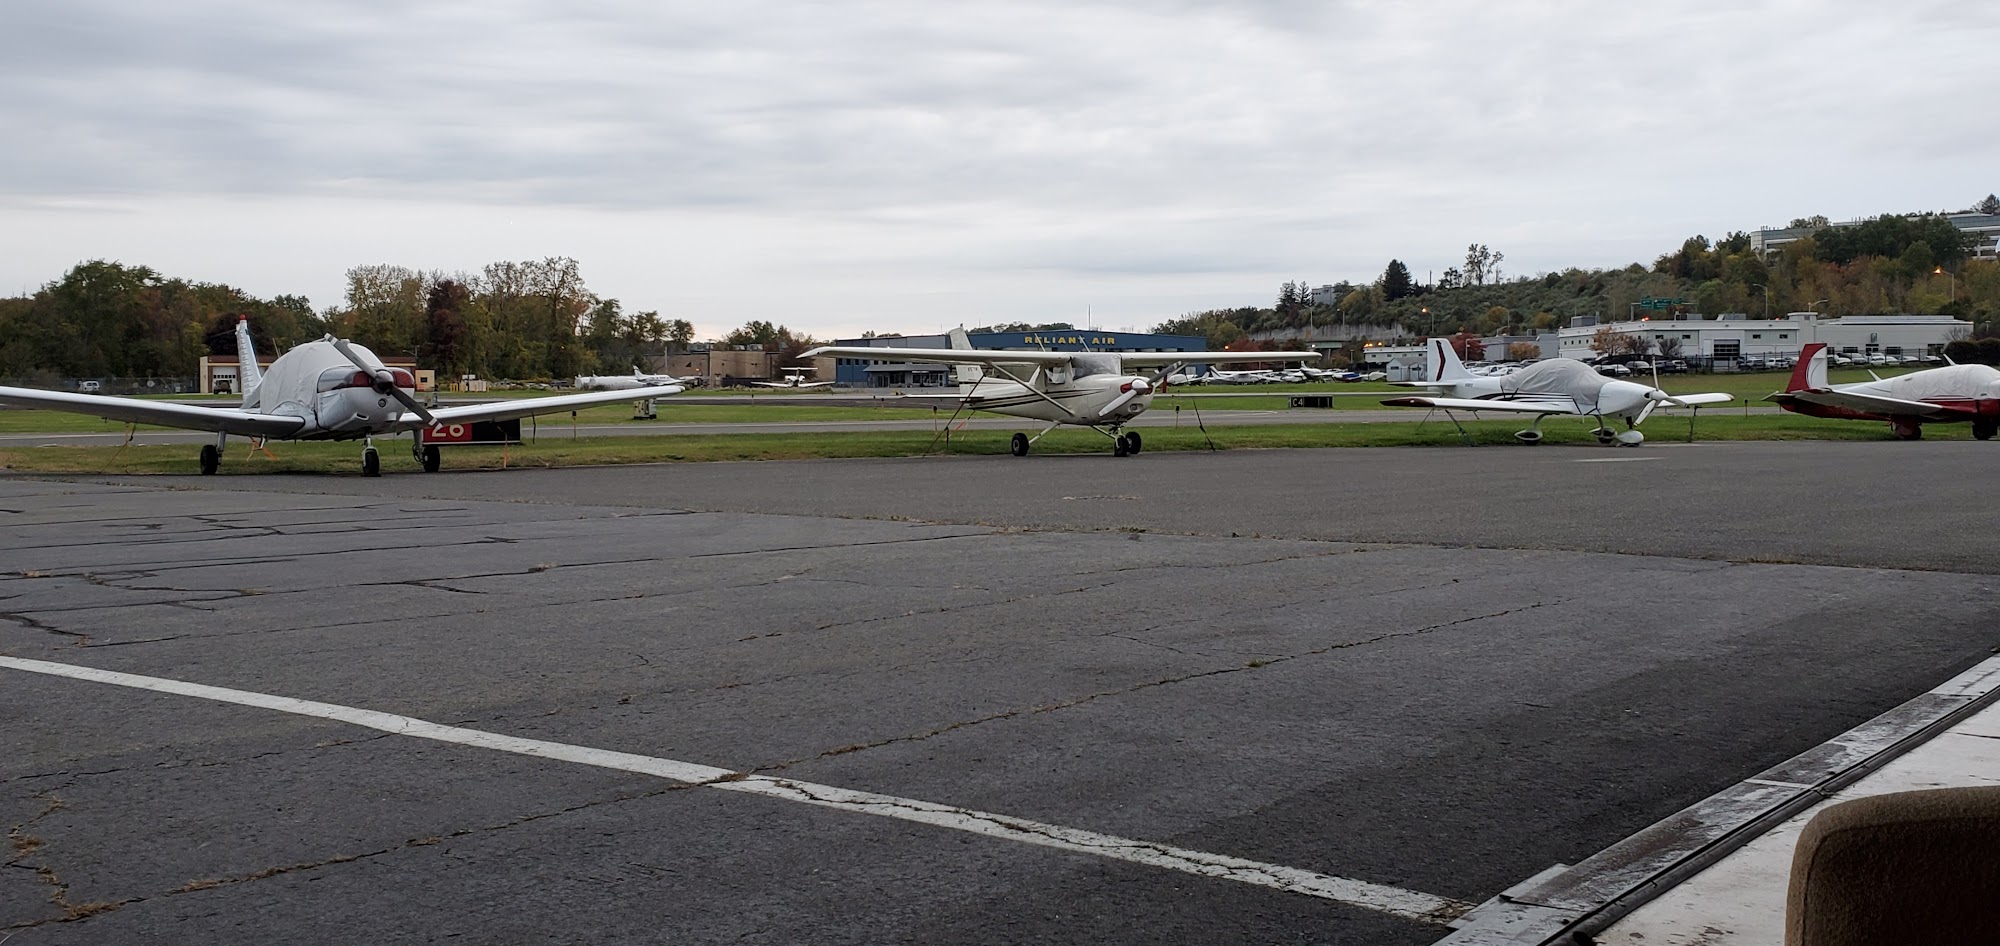 The Hangar at Danbury Airport